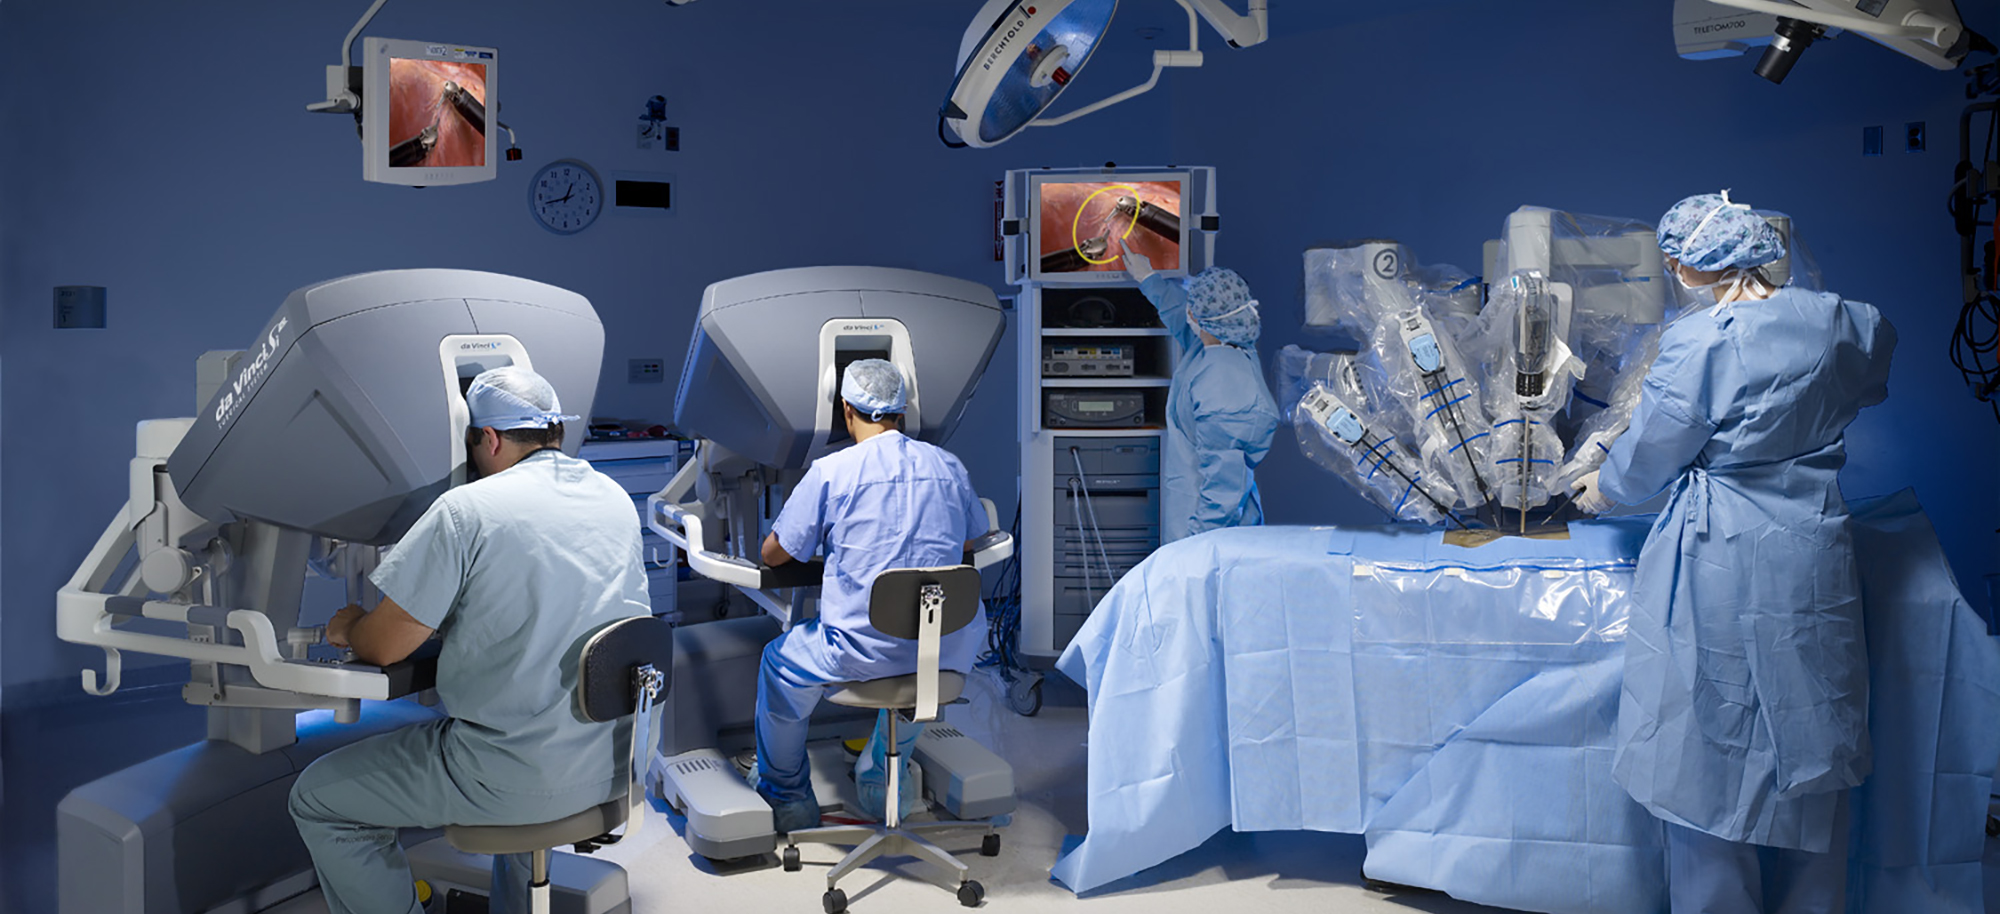 手術支援ロボットの適用拡大後の展開 泌尿器科領域が牽引か